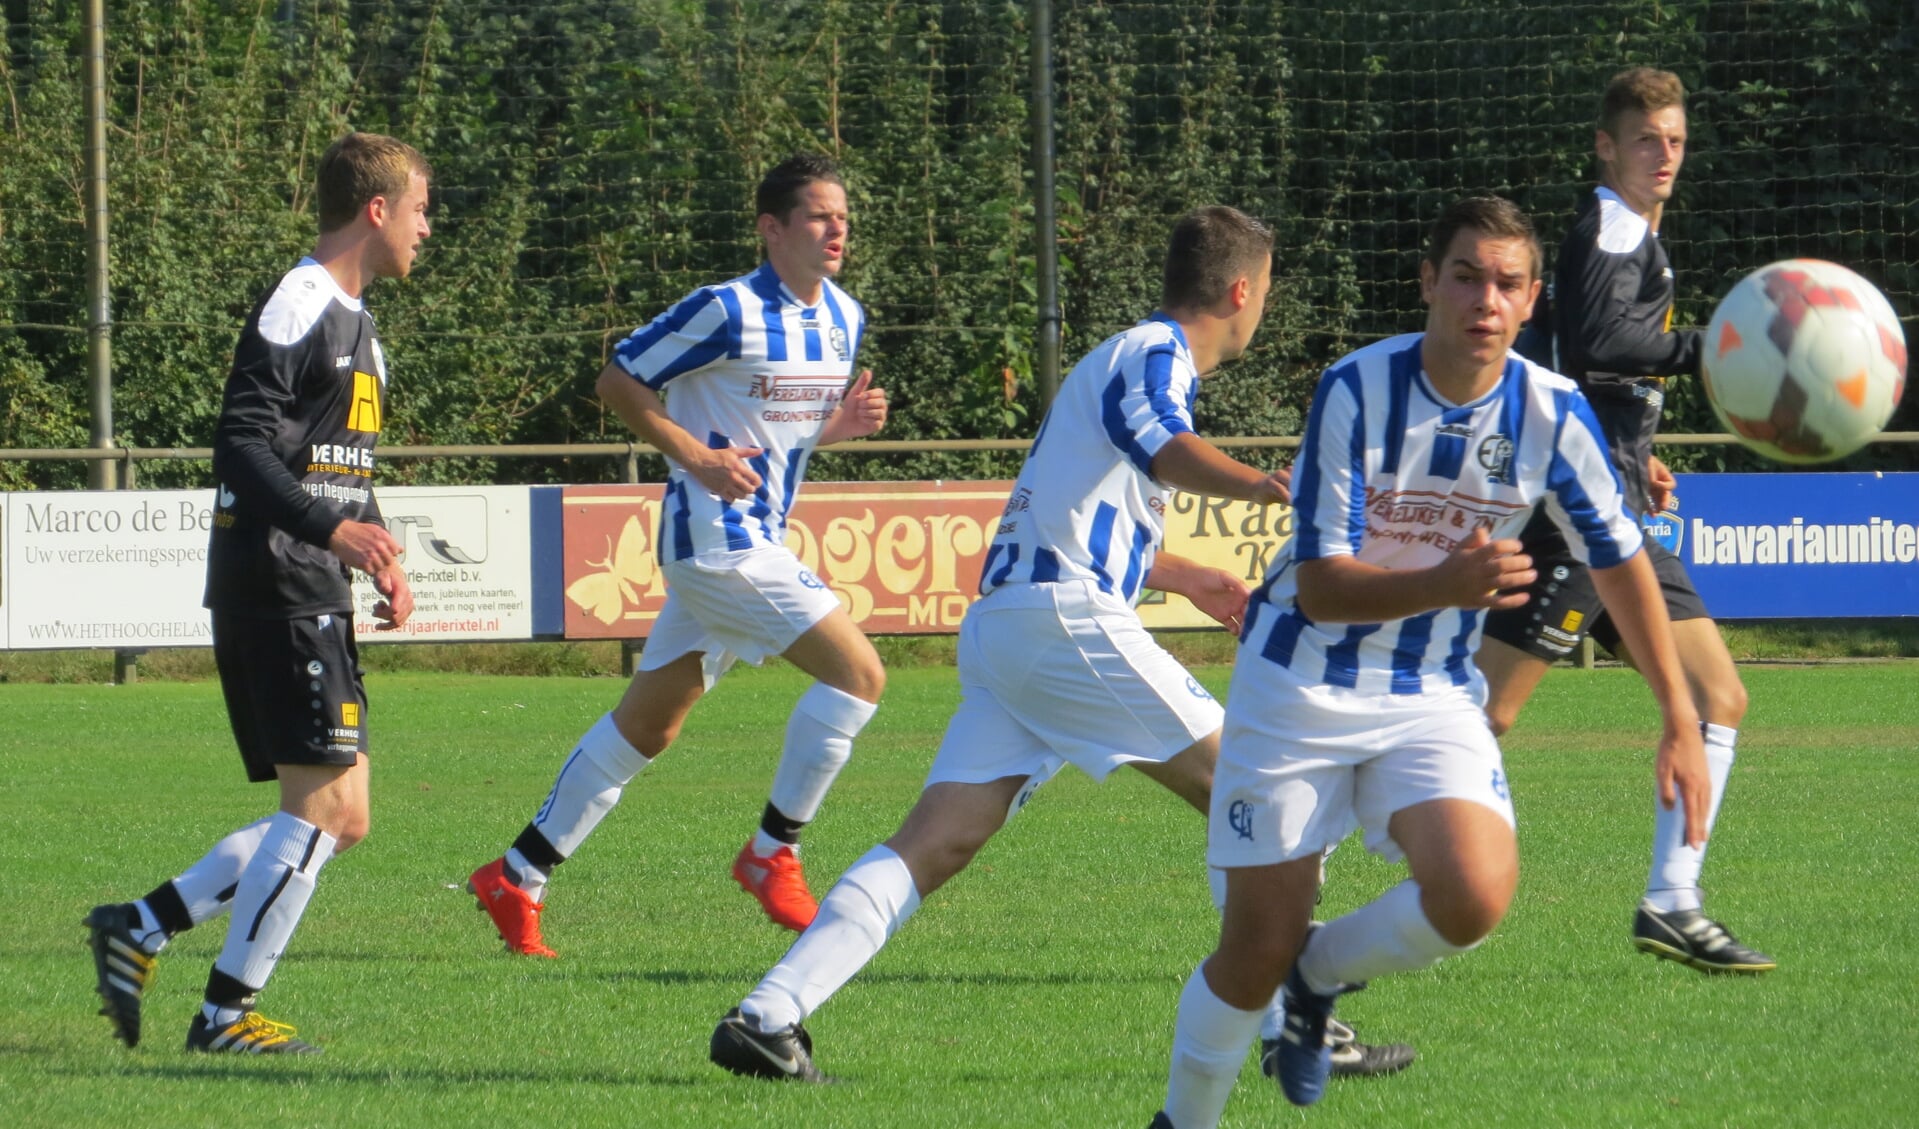 Frank van Berlo bij de bal, op de achtergrond in het blauw-wit Roel van Mook en in het midden Bas Hollanders.